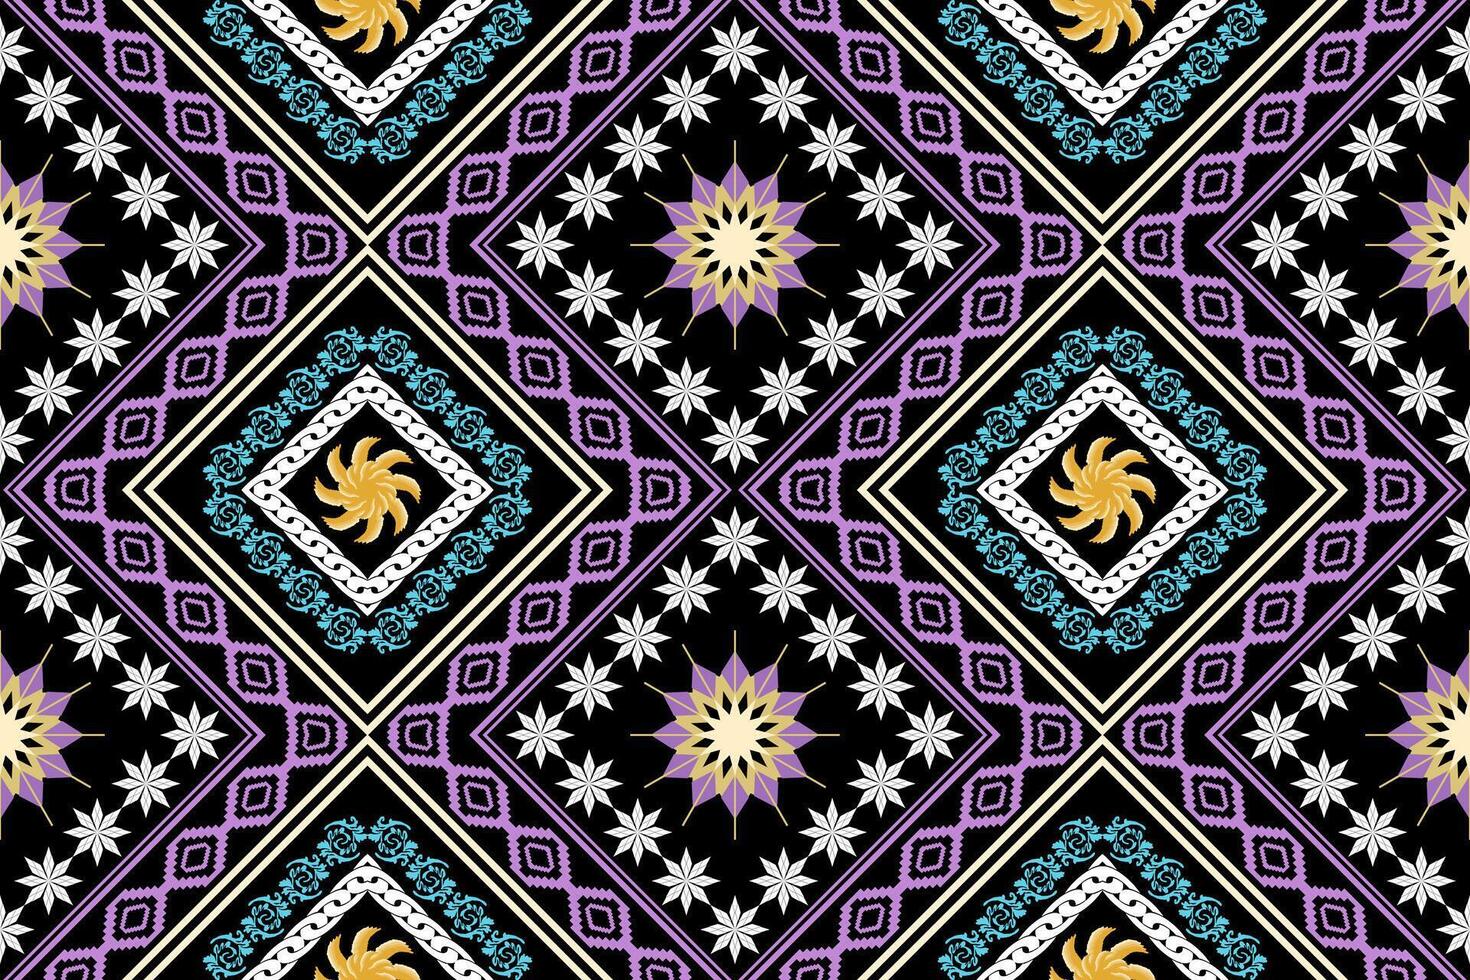 etnisk figur aztec broderi stil.geometrisk ikat orientalisk traditionell konst mönster.design för etnisk bakgrund, tapeter, mode, kläder, omslag, tyg, element, sarong, grafik, vektor illustration.